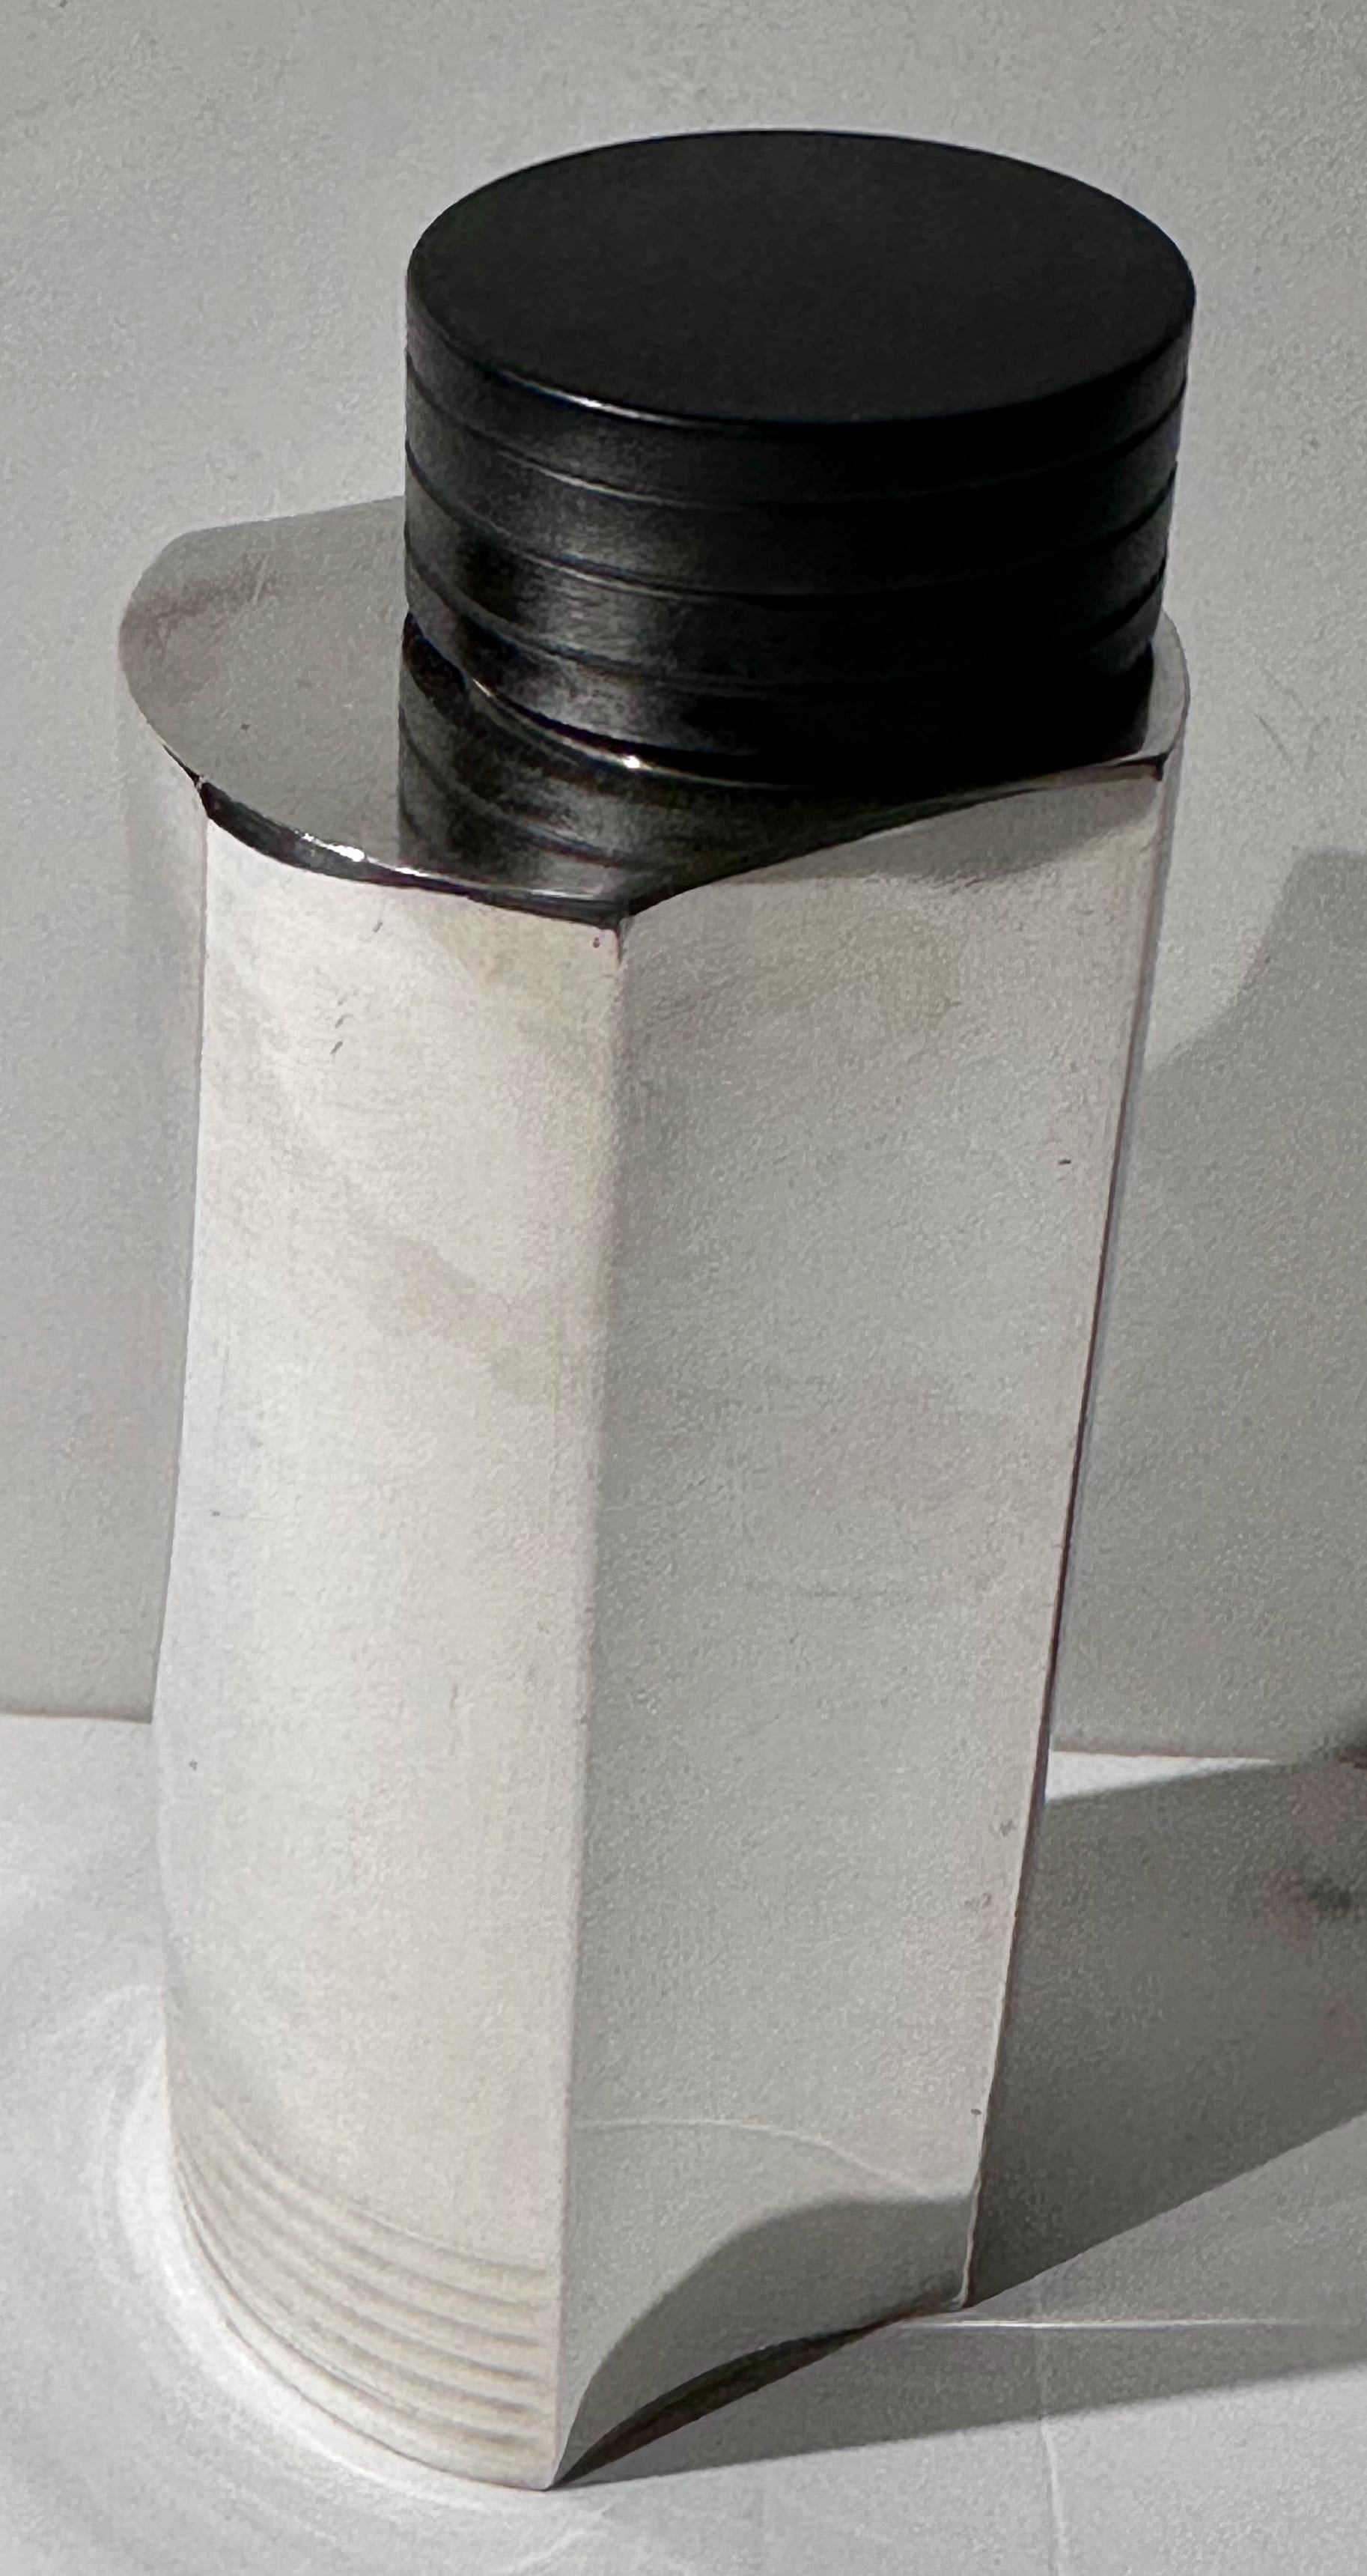 Dieser ikonische Art-Déco-Cocktailshaker wurde 1935 von dem schwedischen Designer Folke Arström für GAB entworfen und zeichnet sich durch perfekte funktionalistische Linien und Proportionen aus. Die aus versilbertem Messing gefertigte Uhr ist